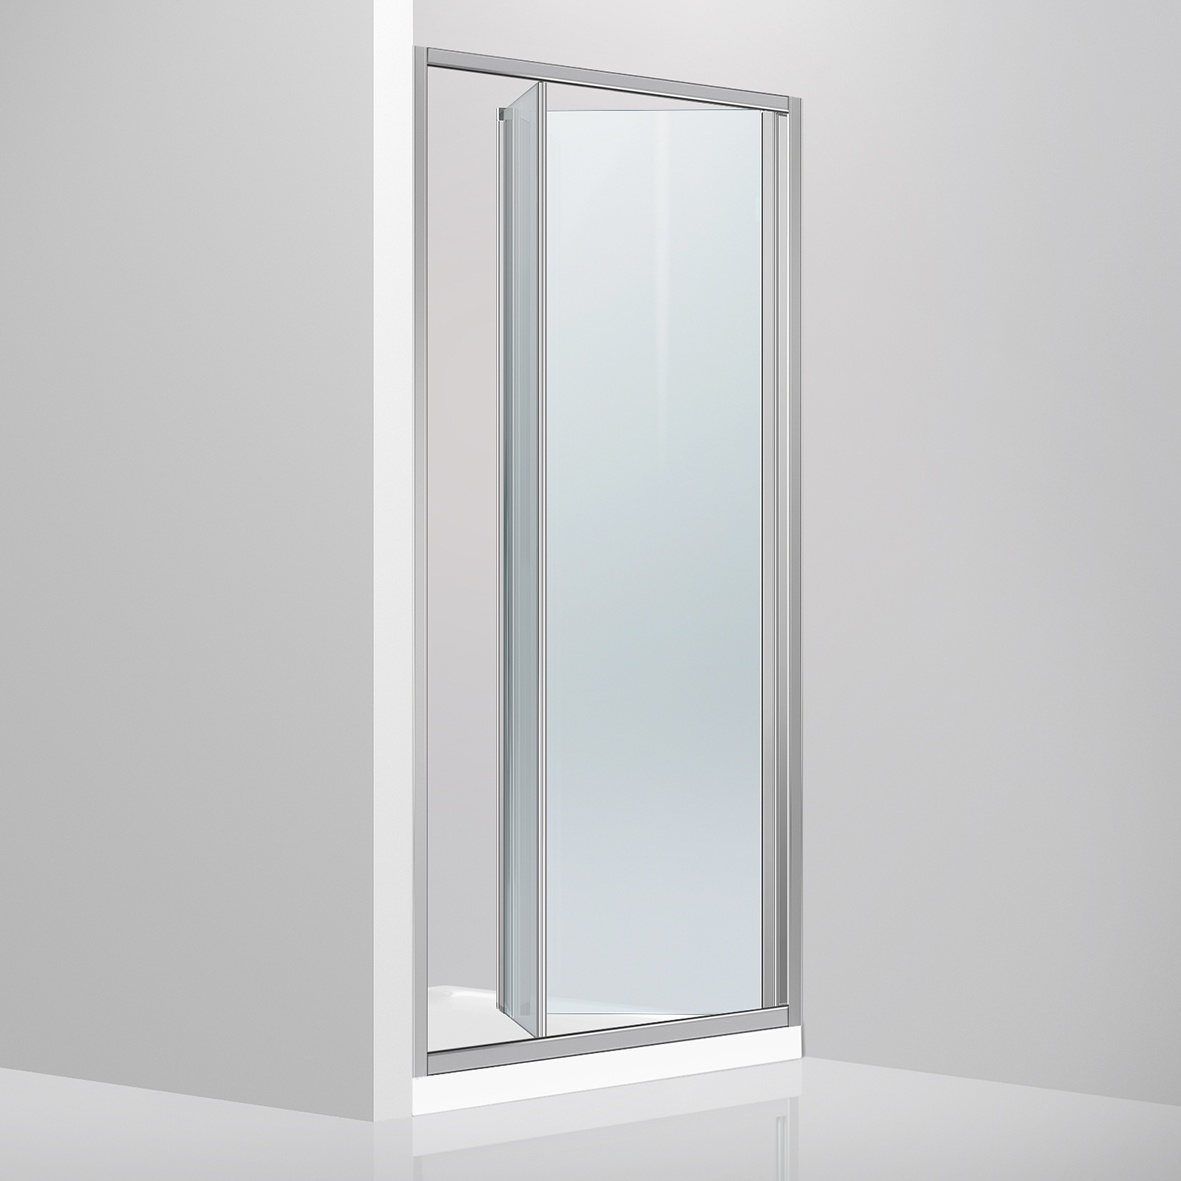 Дверь для душевой ниши DEVIT Fresh стеклянная складная двухсекционная 190x100см прозрачная 4мм профиль хром FEN9210